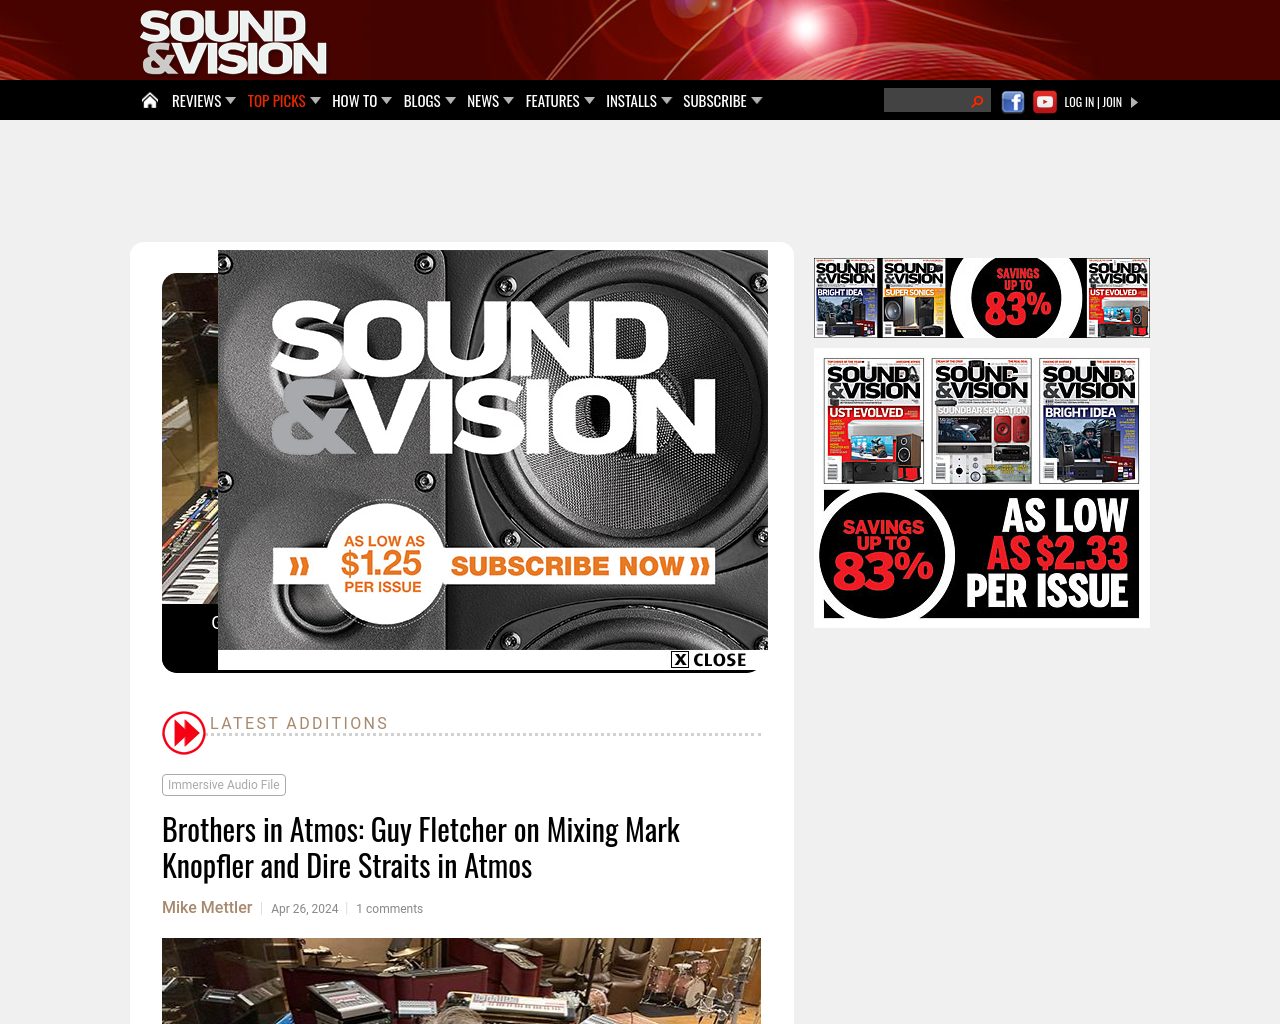 soundandvision.com